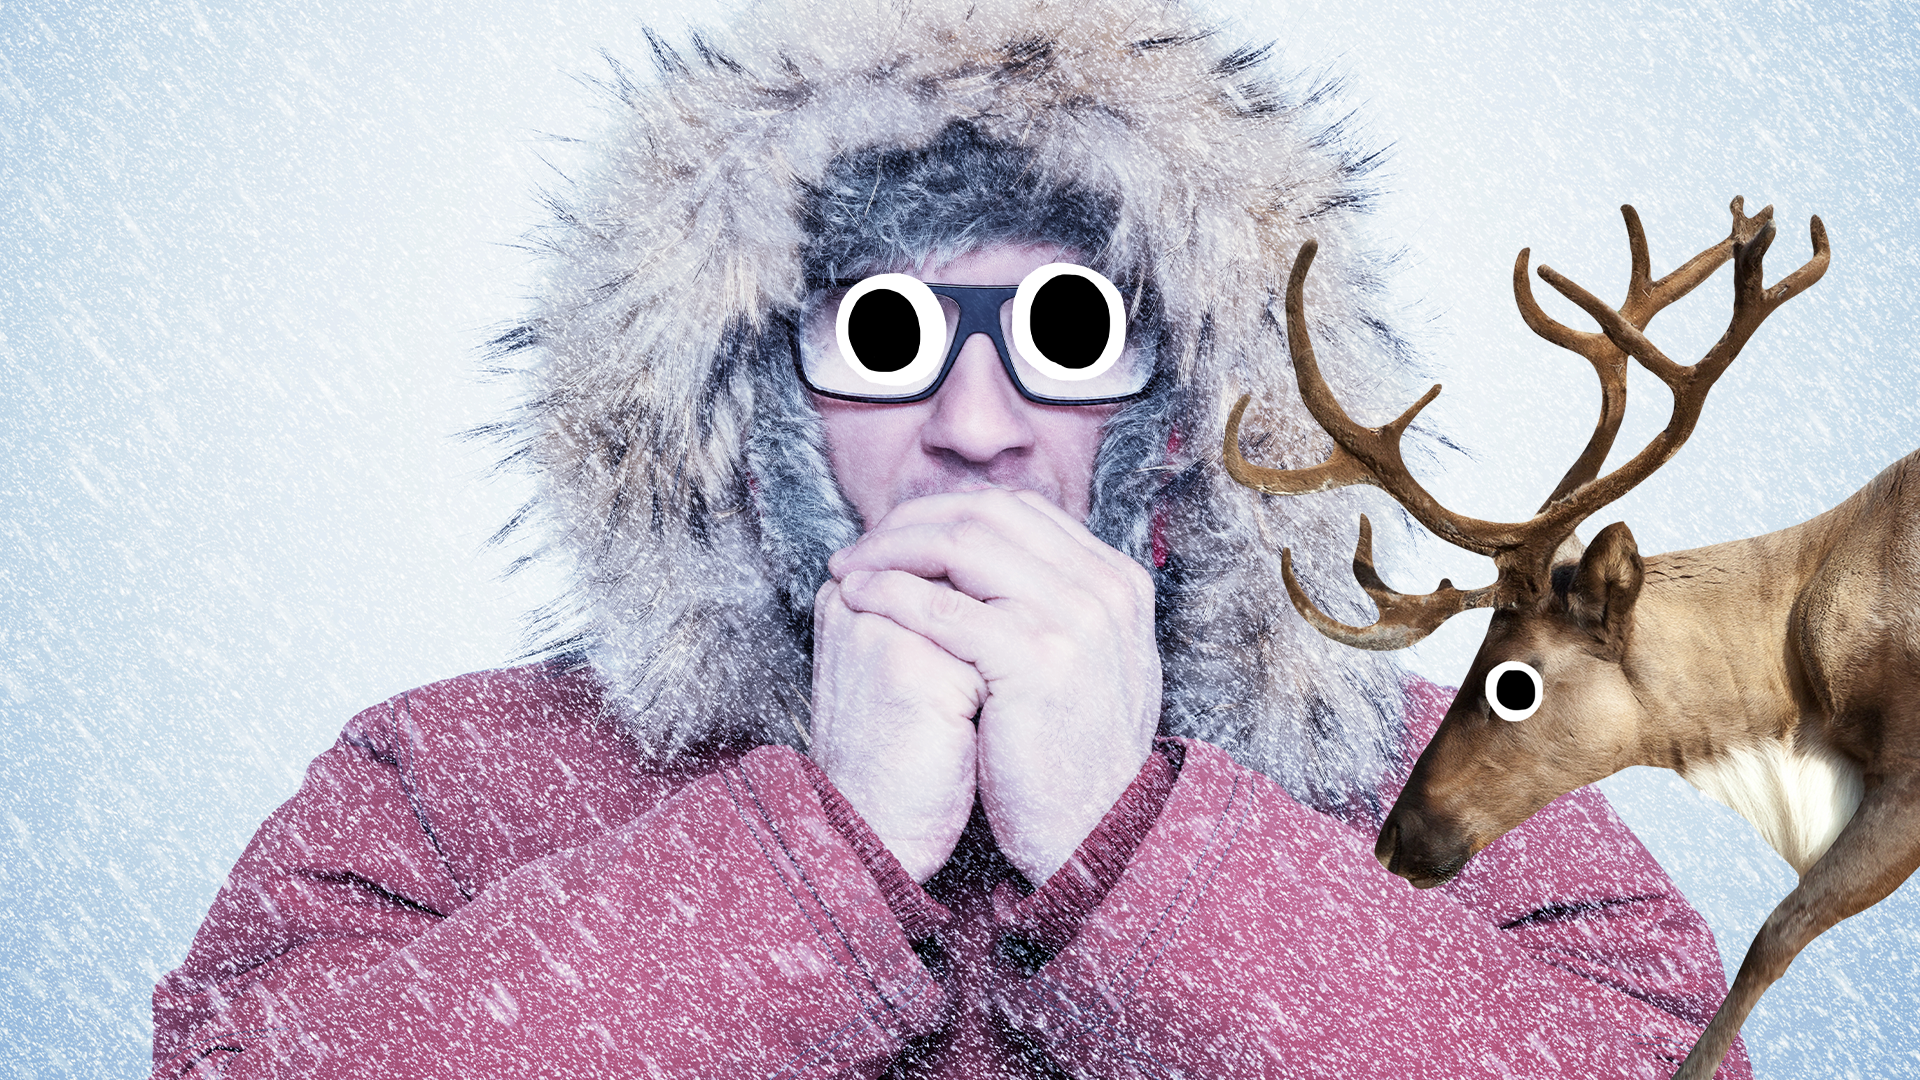 Man looking cold in coat with derpy reindeer